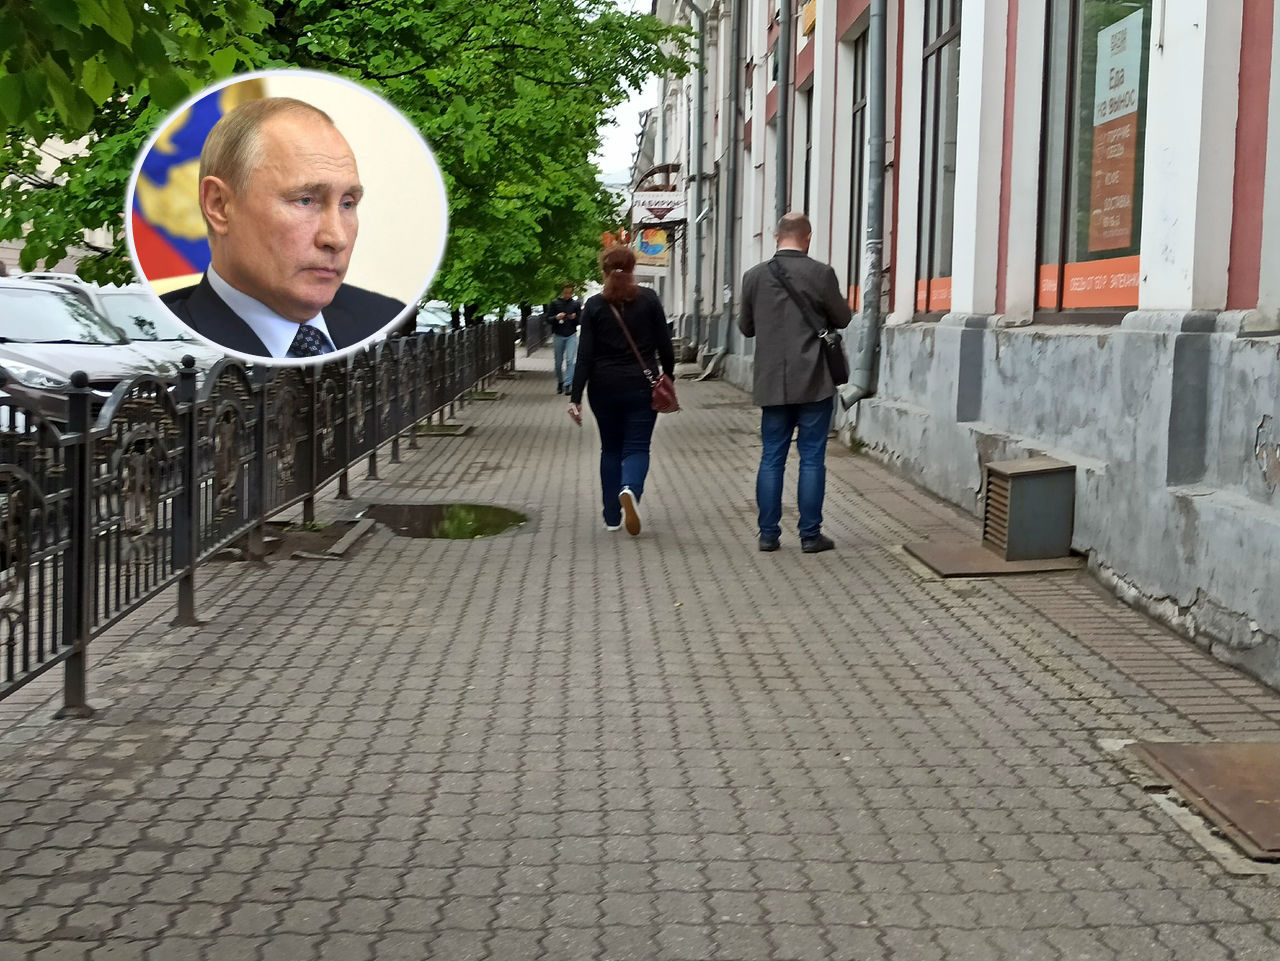 Ещё по 10 тысяч на ребенка: Путин обратился к россиянам